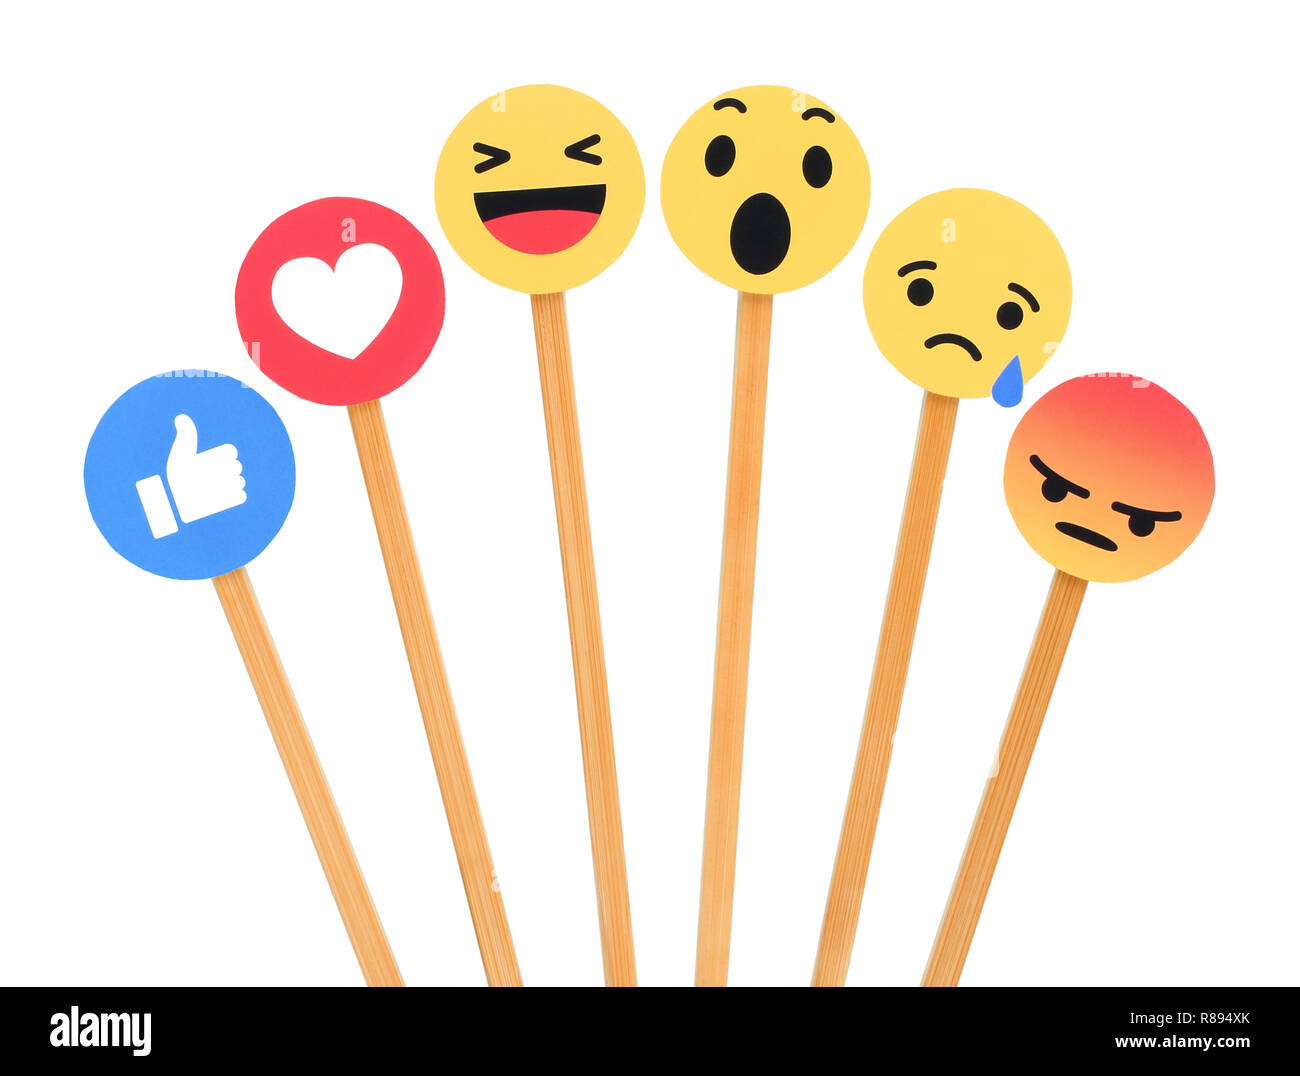 Kiev, Ukraine - le 27 septembre 2018 : Facebook like button 6 Réactions Emoji empathique imprimée sur du papier, couper et mettre des bâtons de bois. Banque D'Images